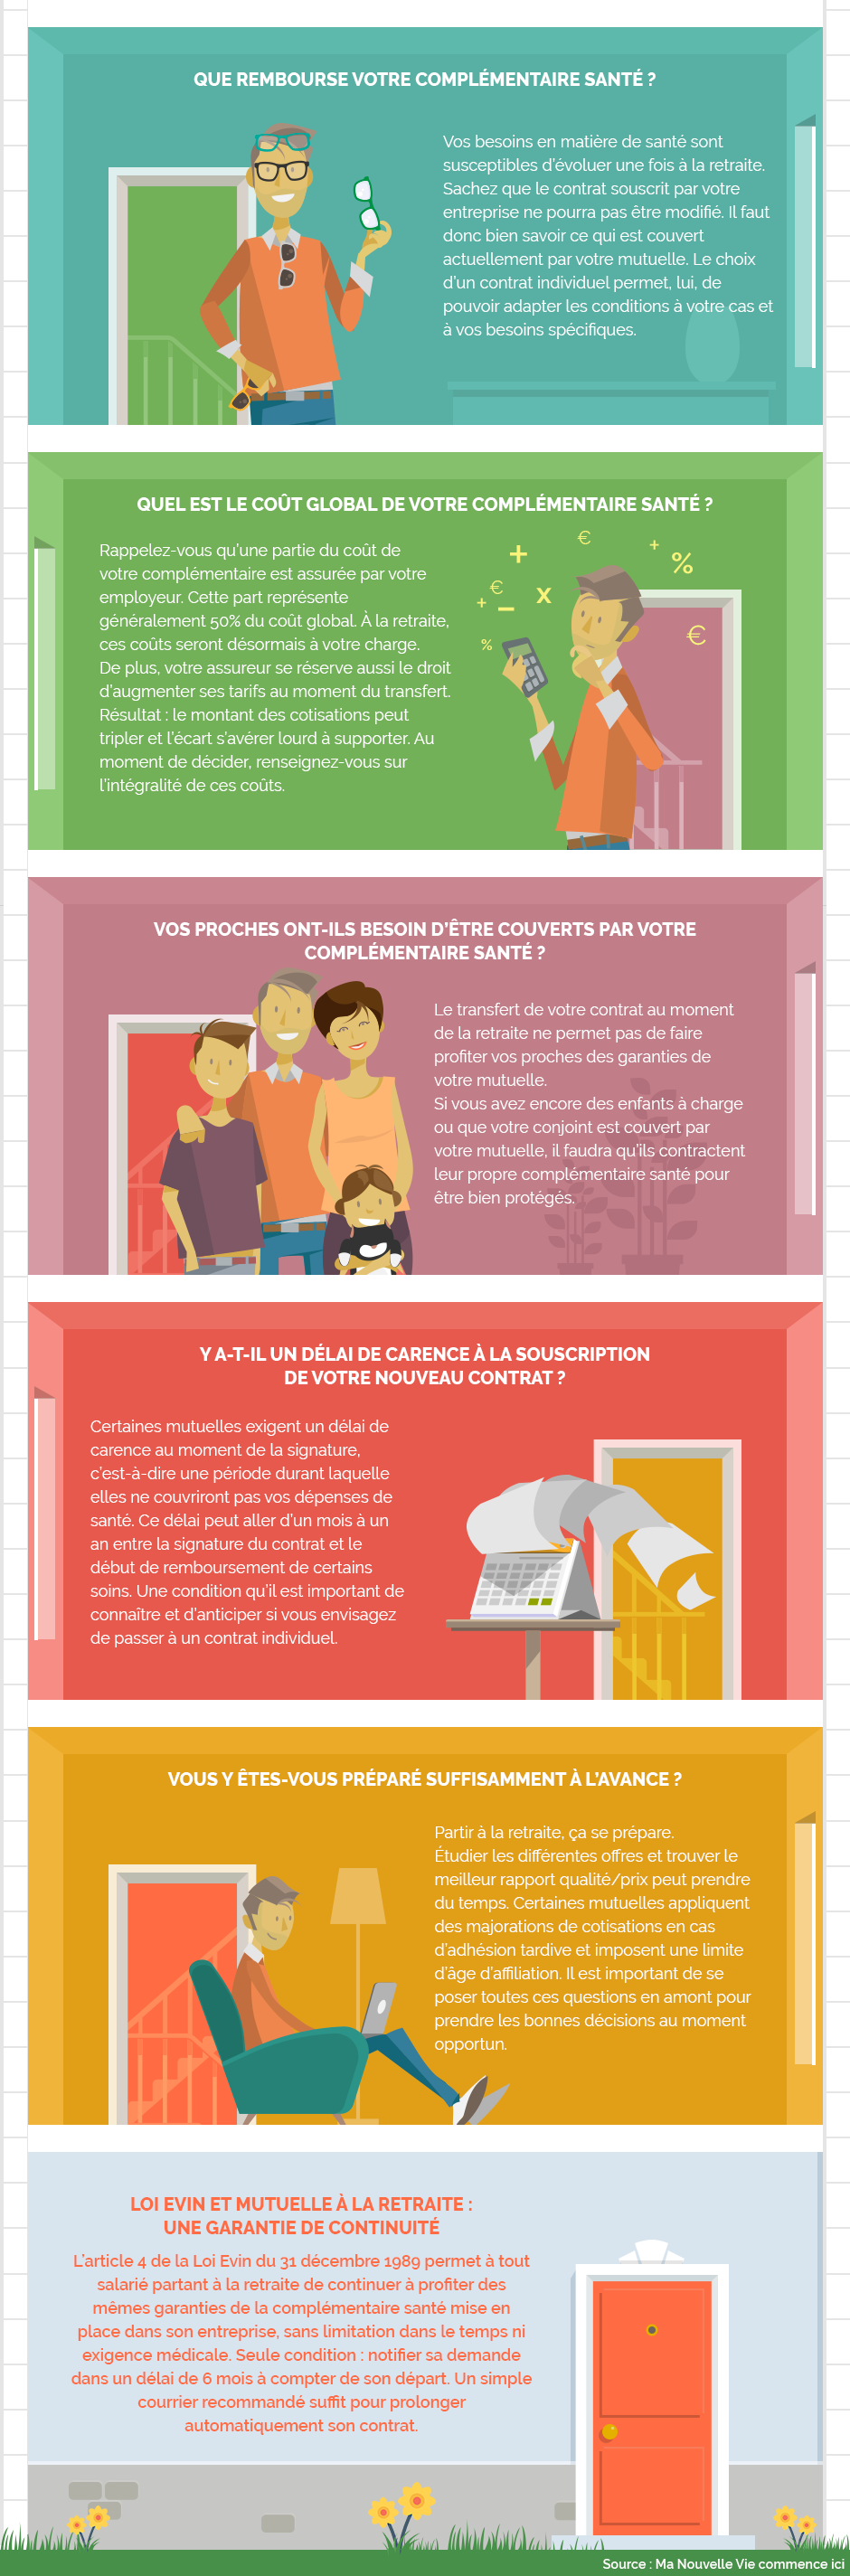 Infographie : Tout savoir sur la portabilité de votre mutuelle santé à la retraite.